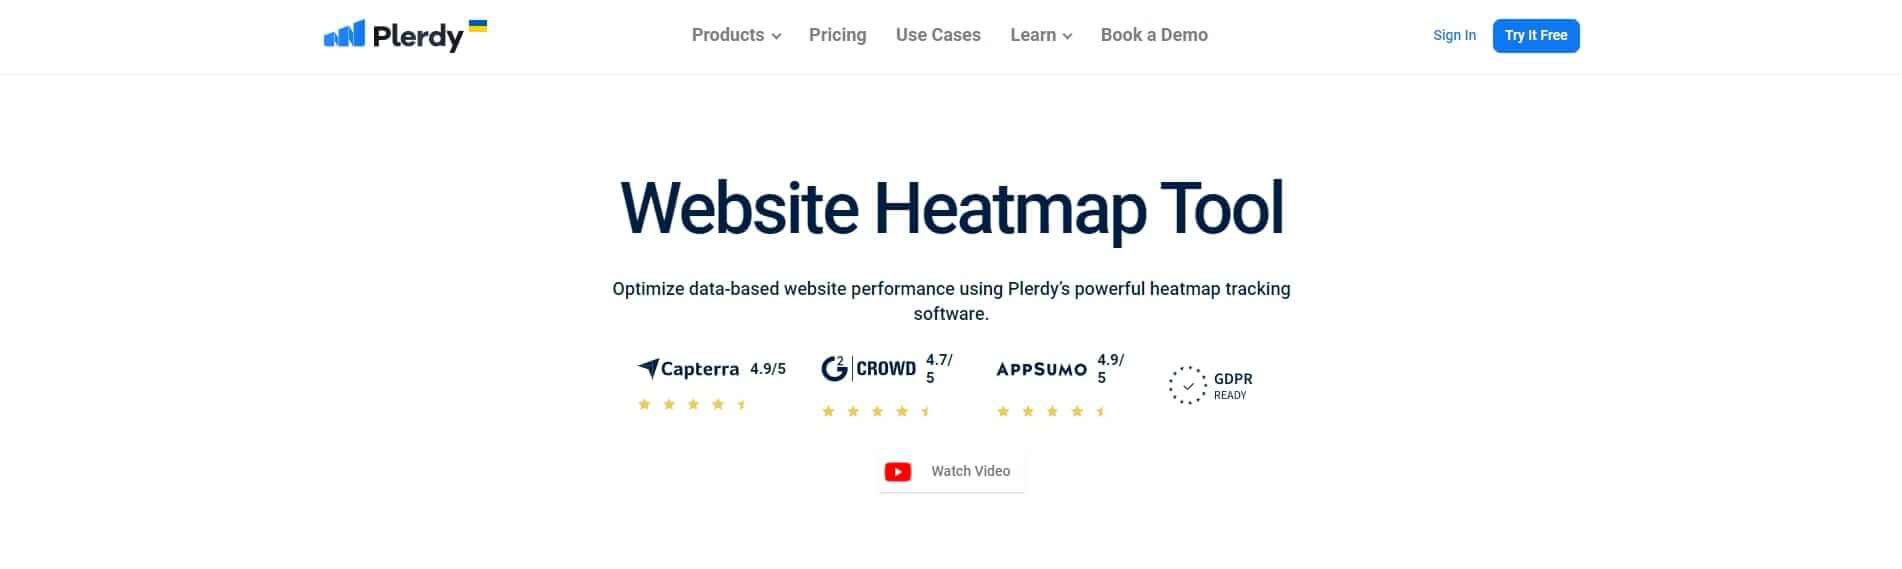 Plerdy Website Heatmap Tool